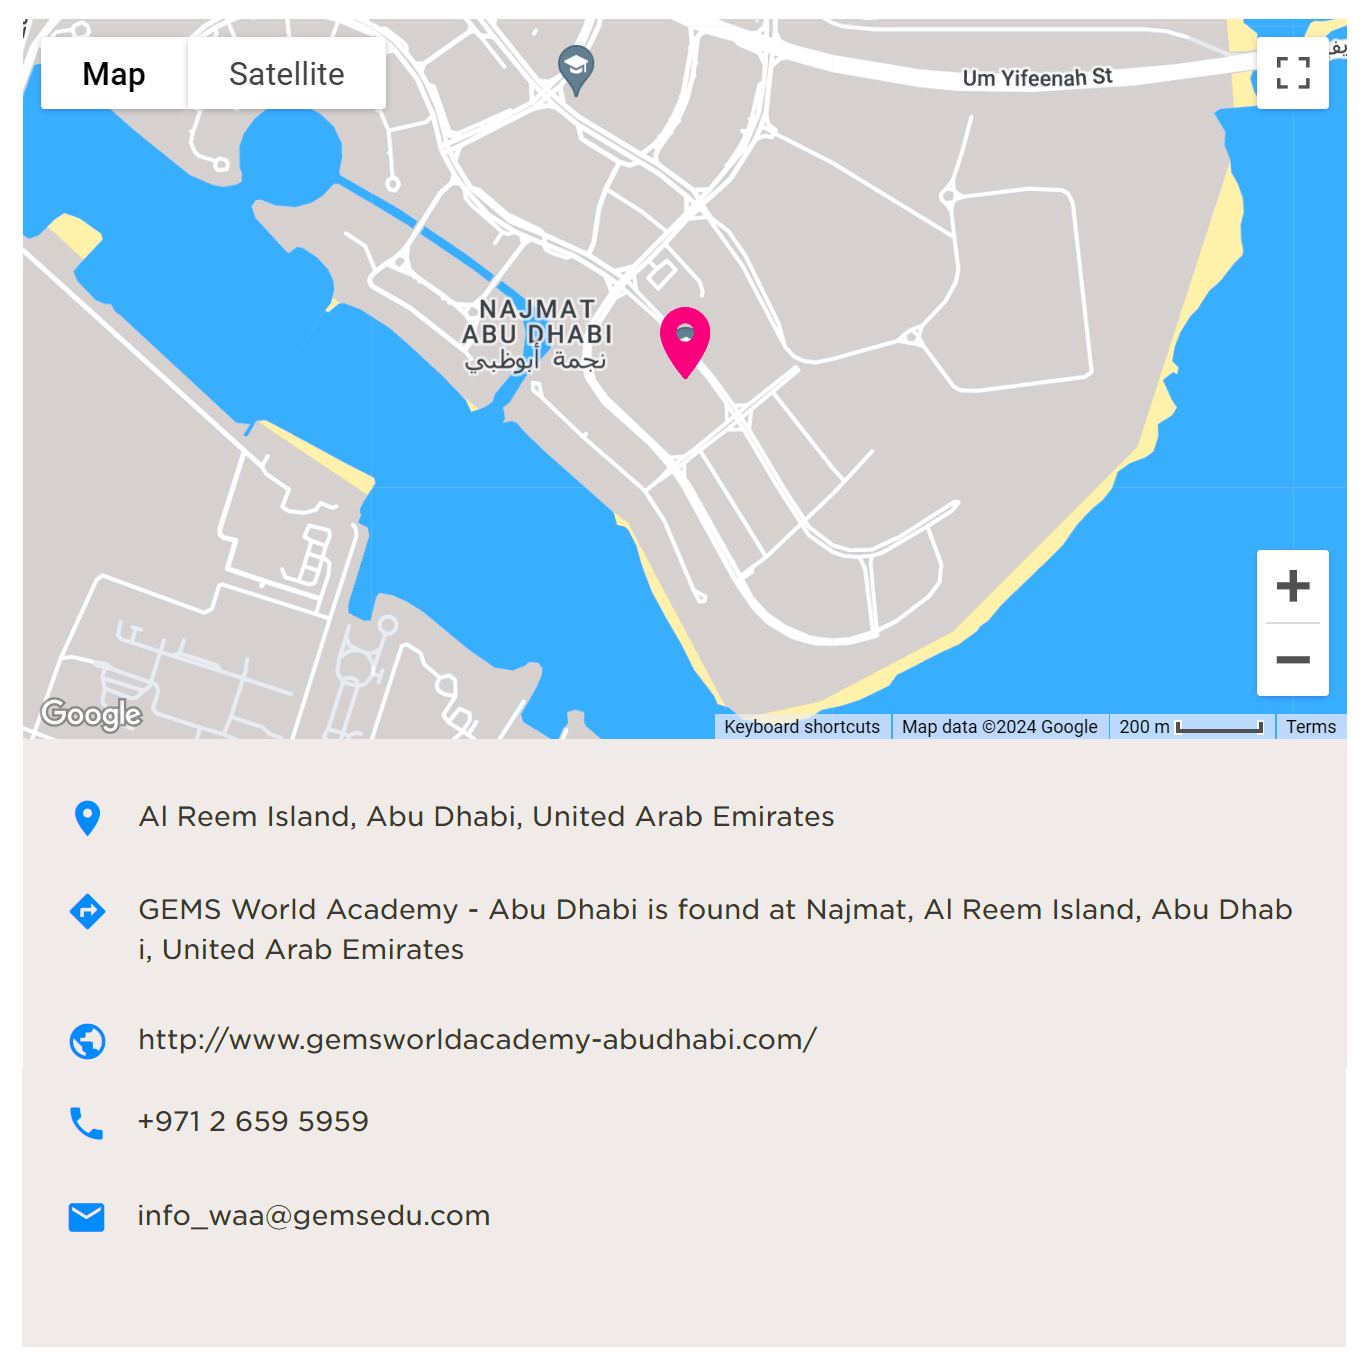 Mapa que muestra las direcciones a GEMS World Academy Abu Dhabi